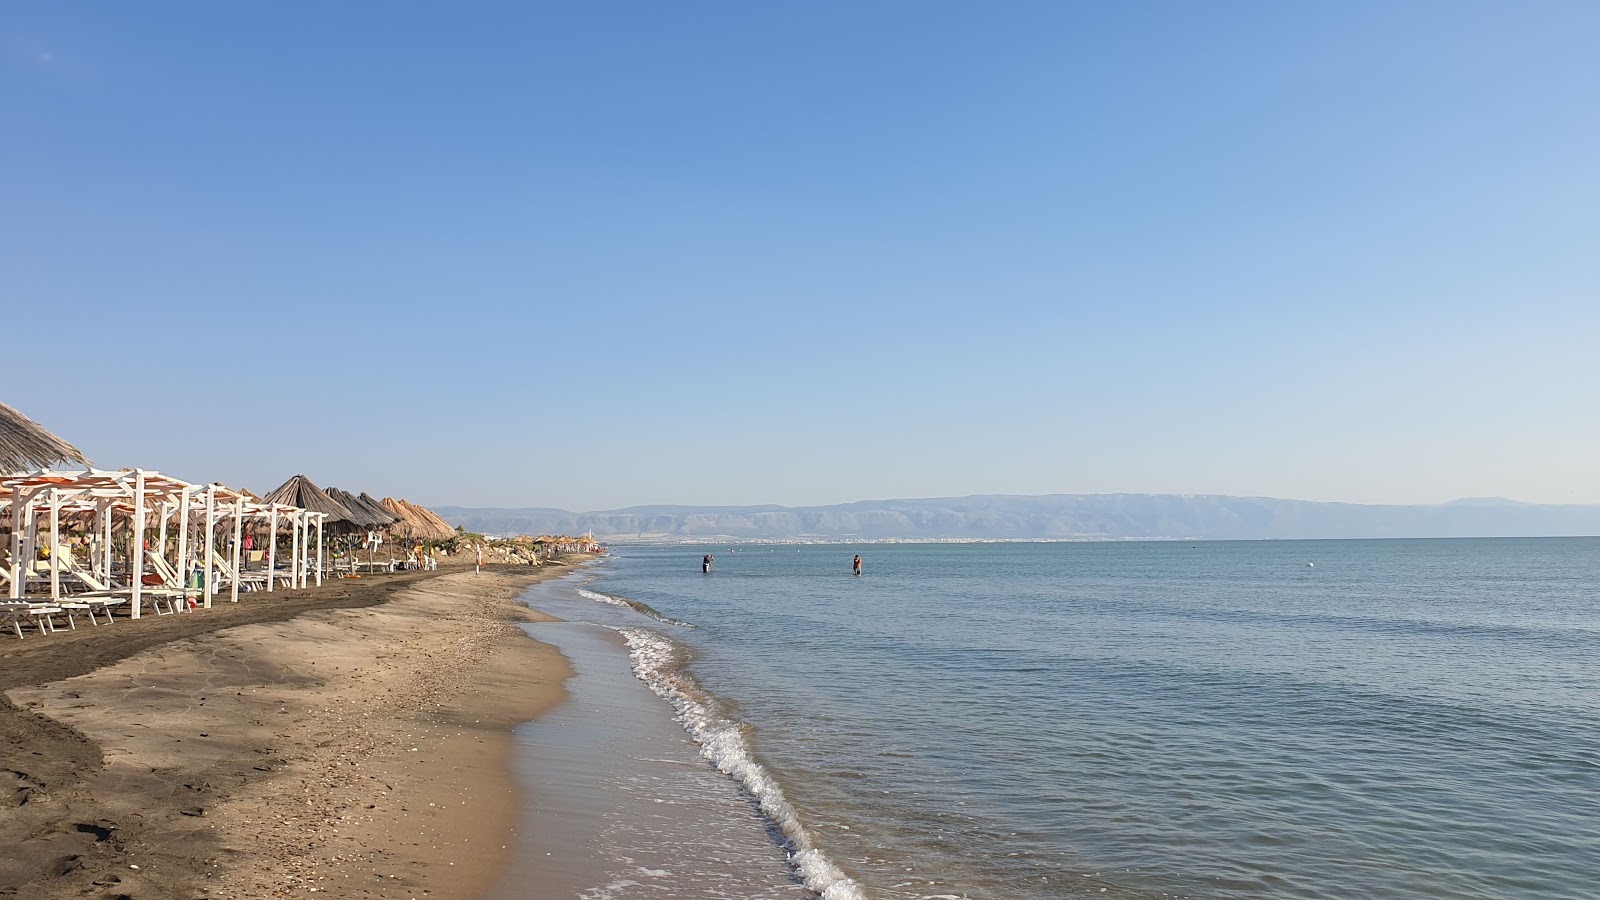 Zdjęcie Ippocampo Beach - popularne miejsce wśród znawców relaksu